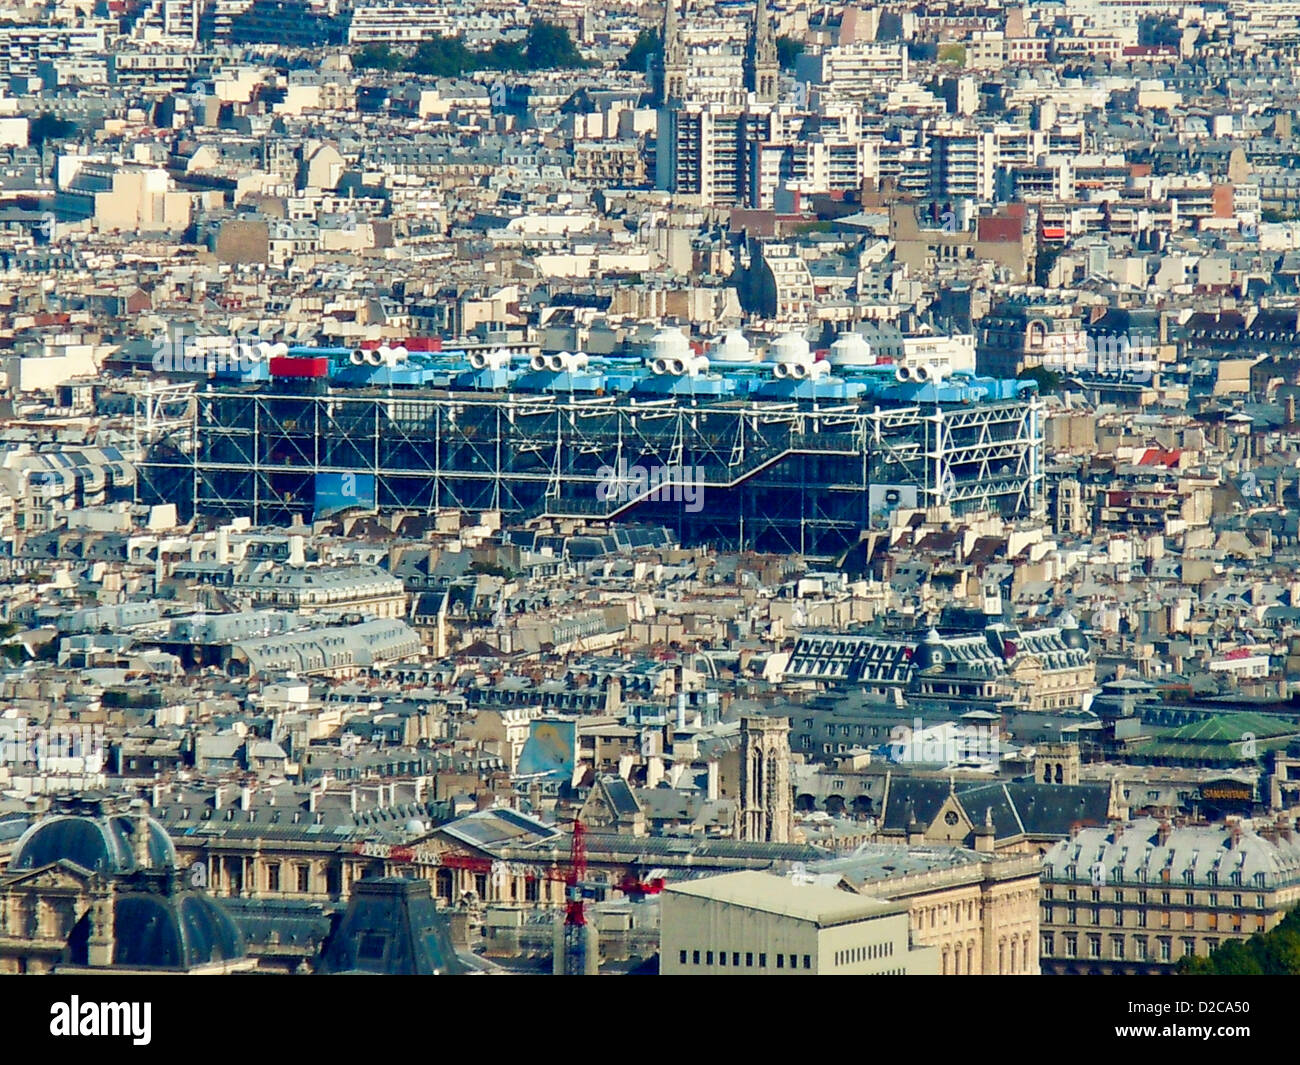 Centre Pompidou, Paris, France Stock Photo